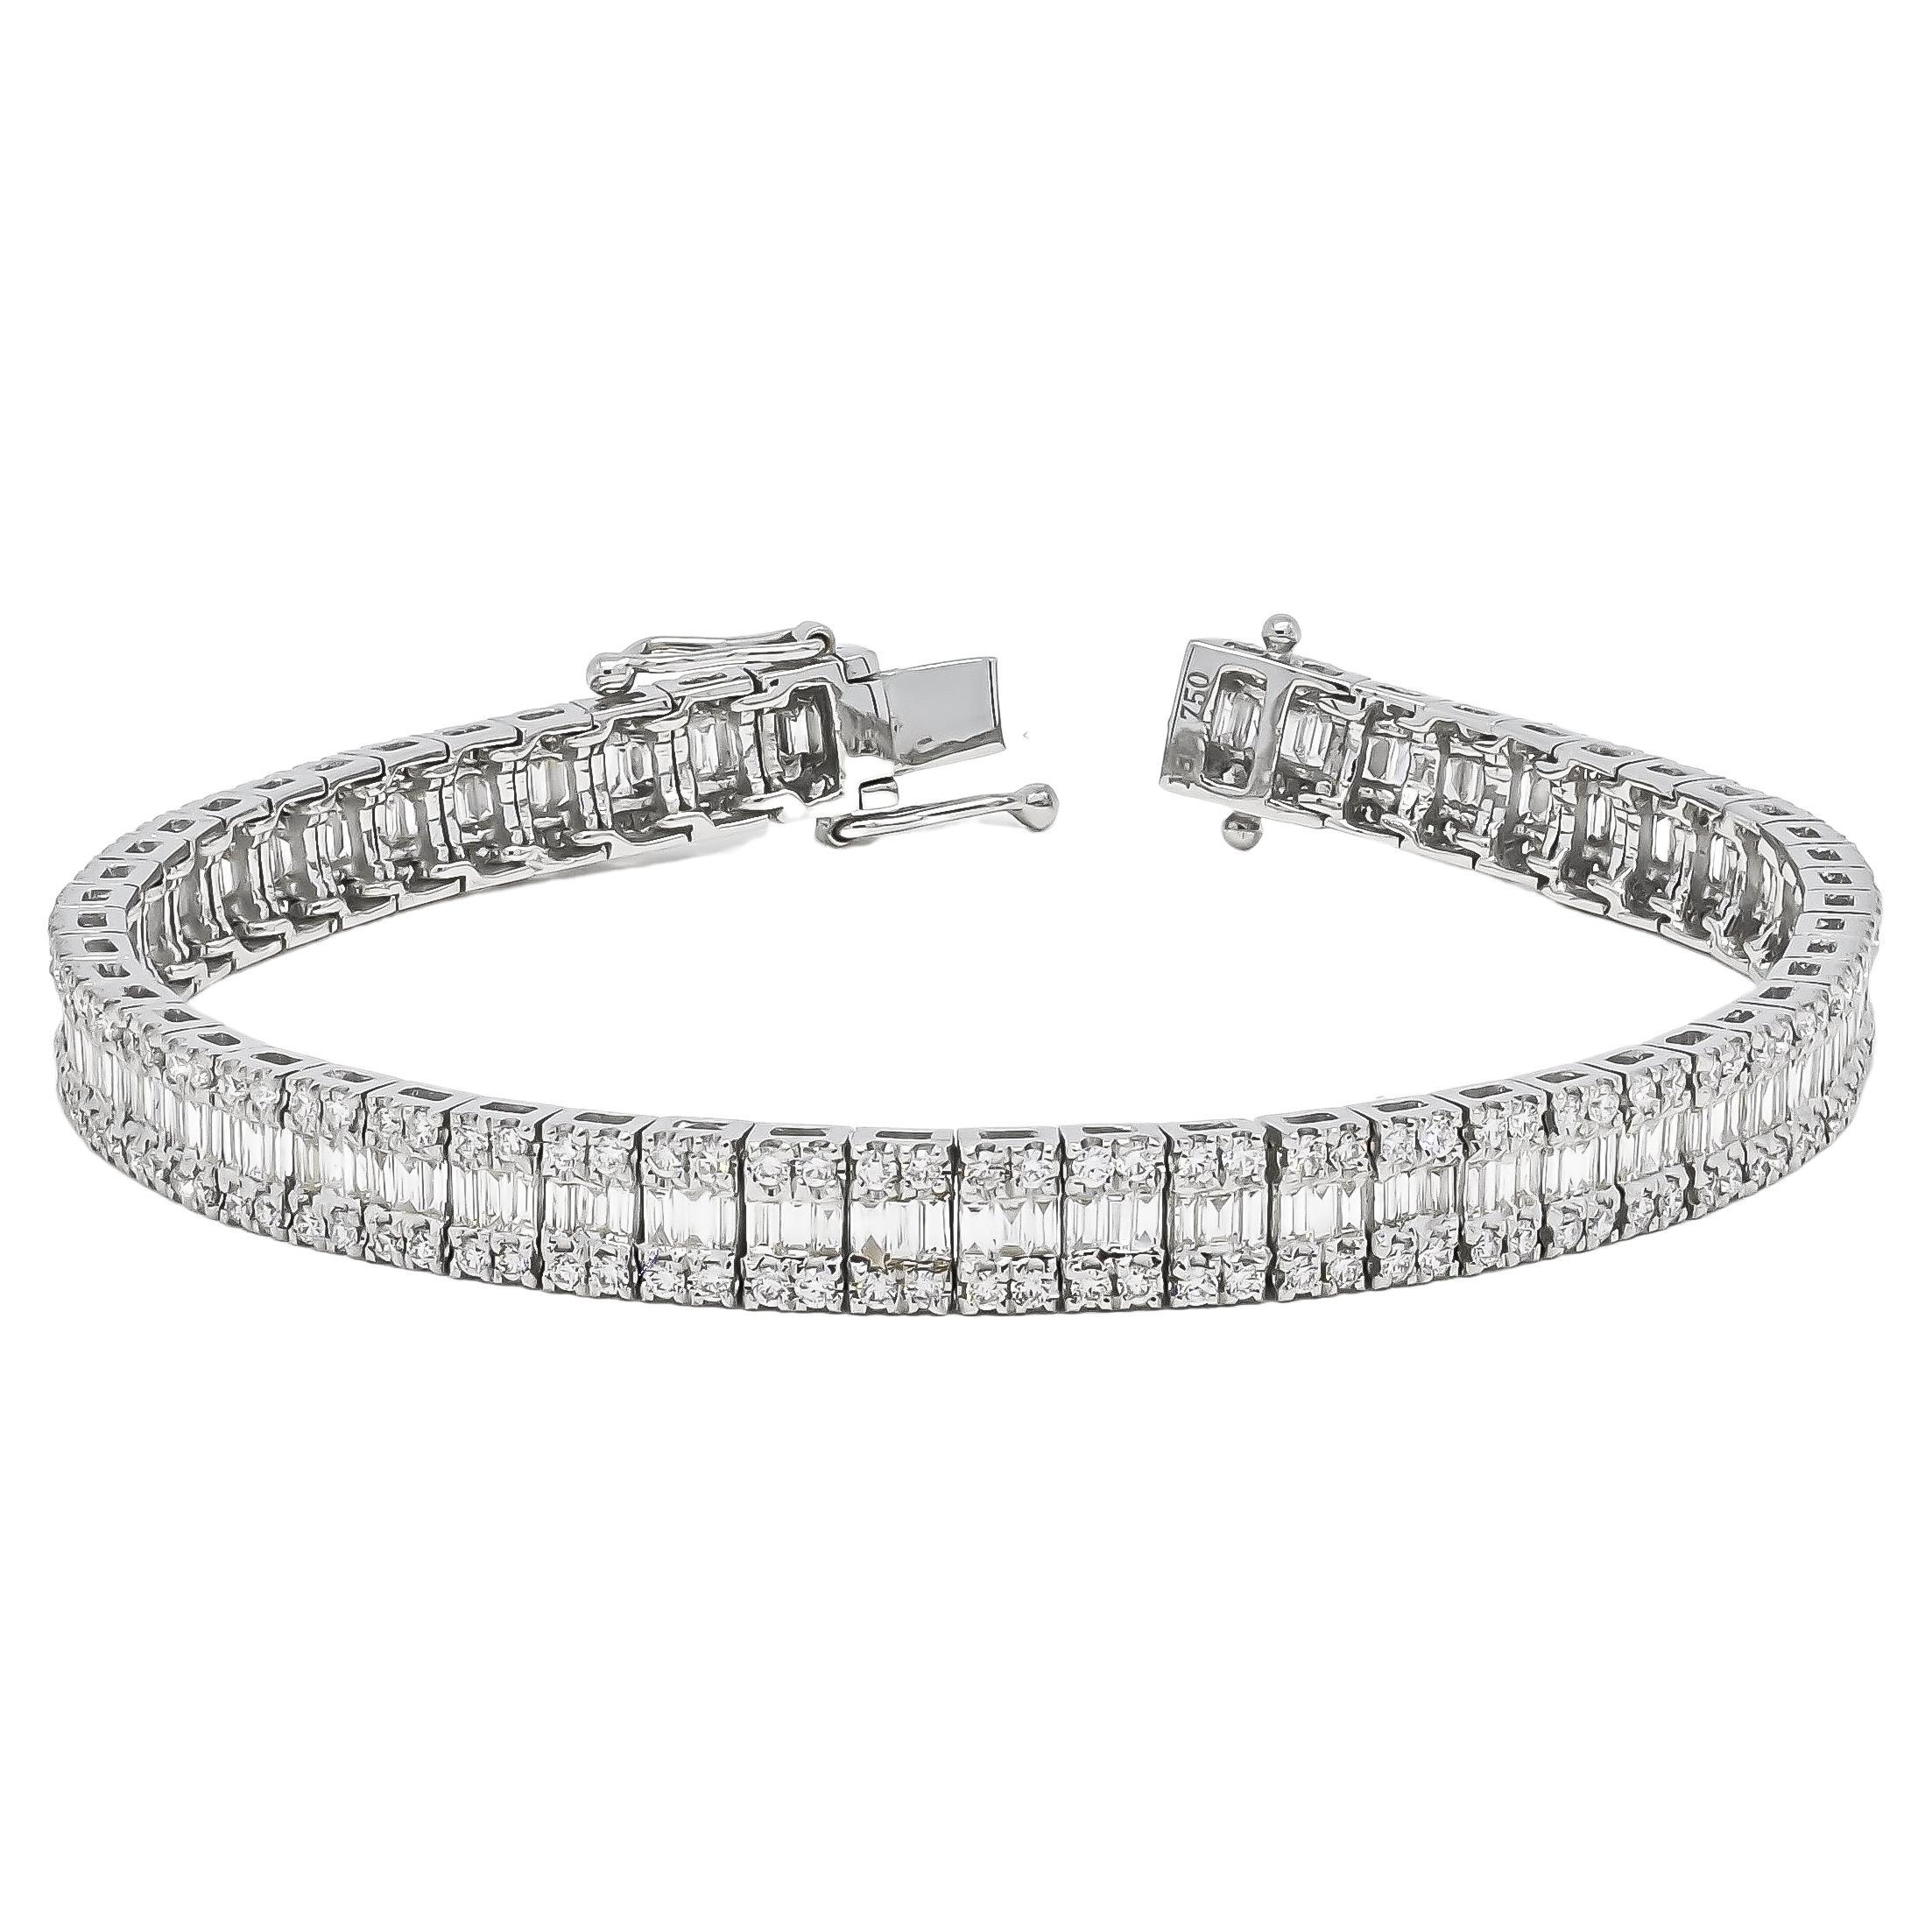 Natural Diamonds 6.7 carats 18KT White Gold Baguette Tennis Bracelet